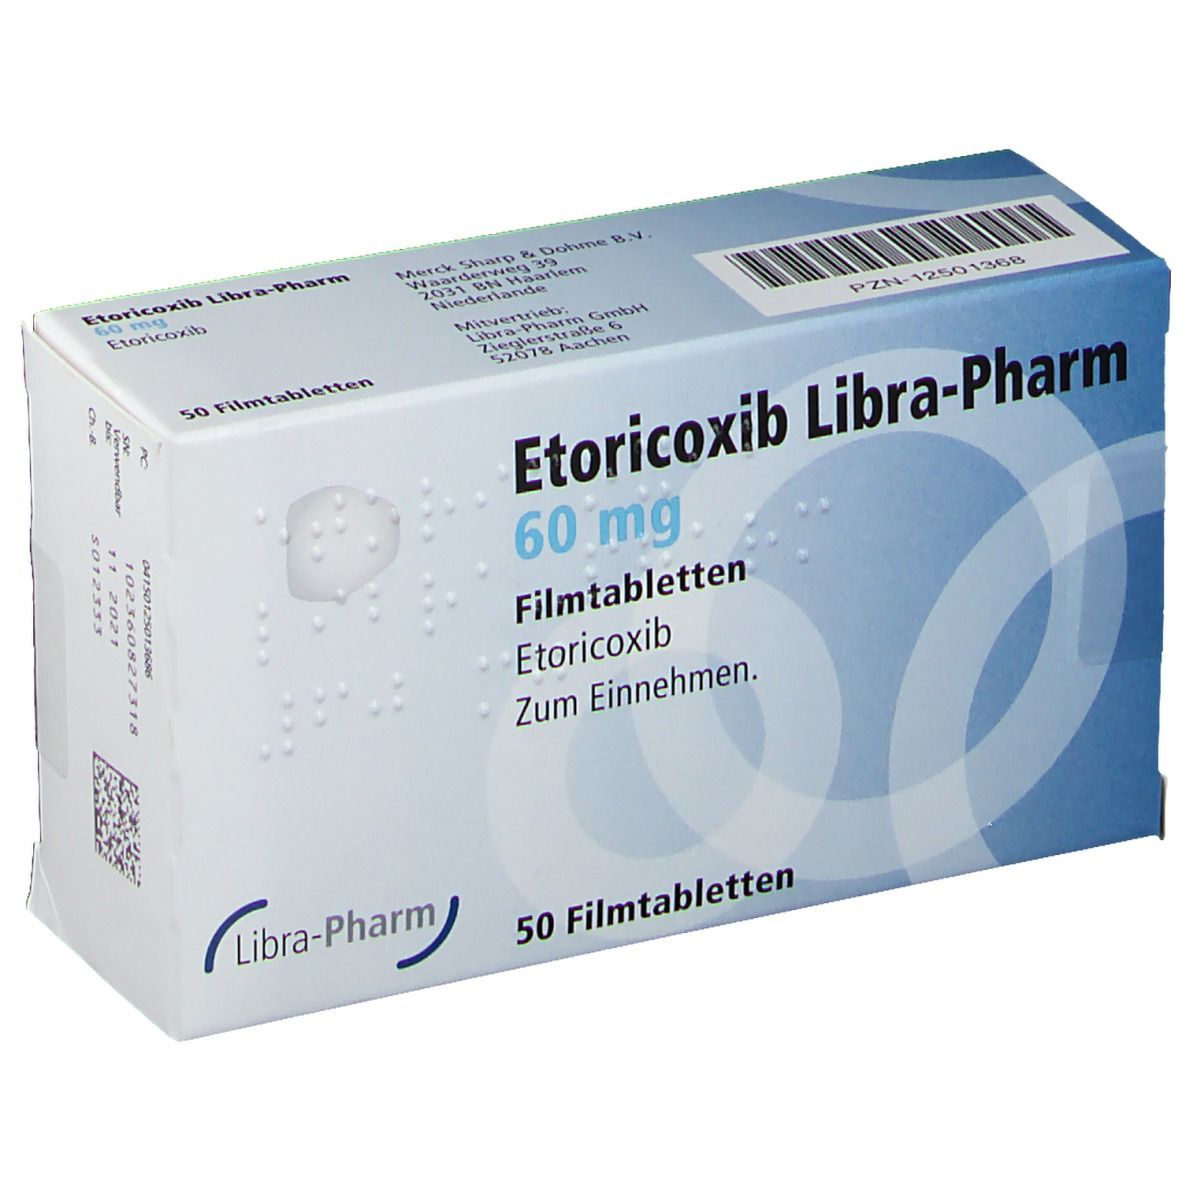 Etoricoxib Libra-Pharm 60 mg